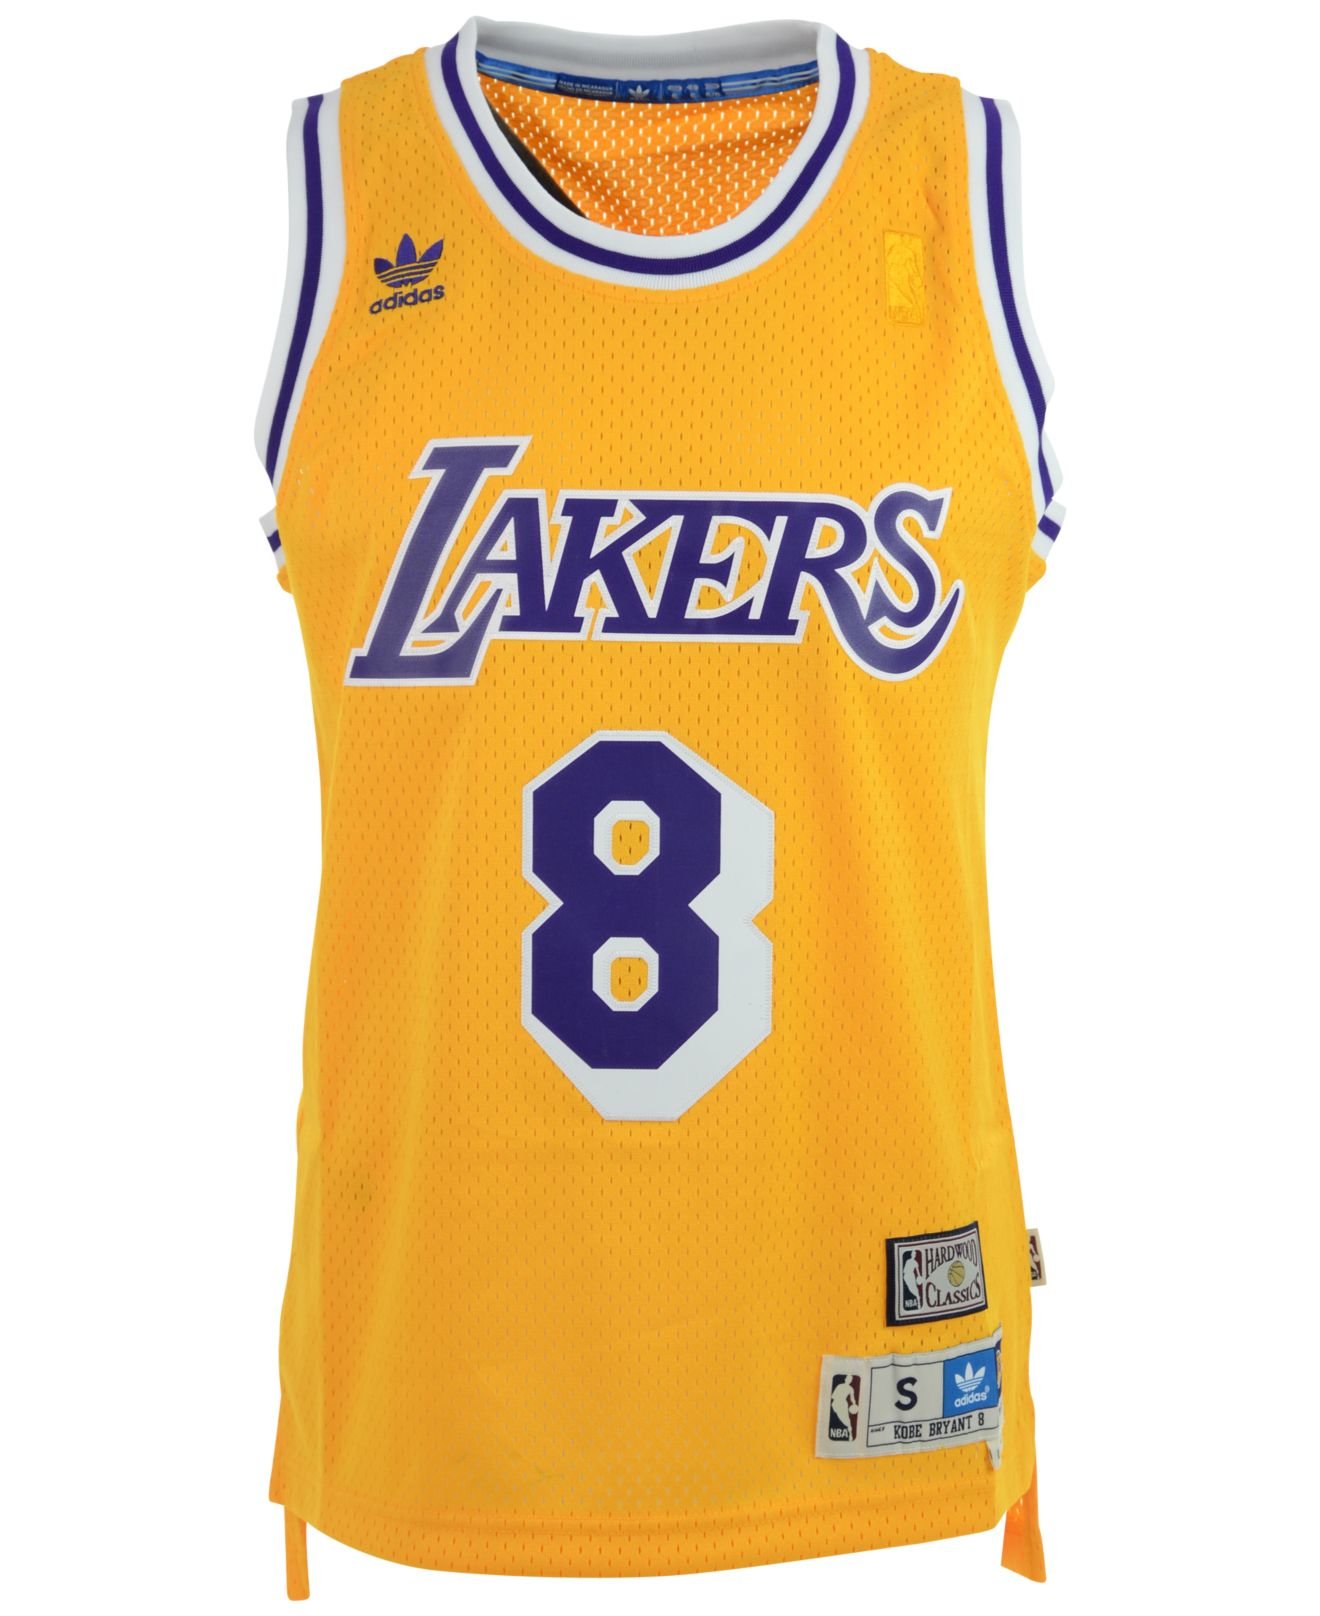 Lakers Yellow î€€Jerseyî€ - Shop î€€Officialî€ Los Angeles Lakers î€€Jerseyî€ Apparel ...